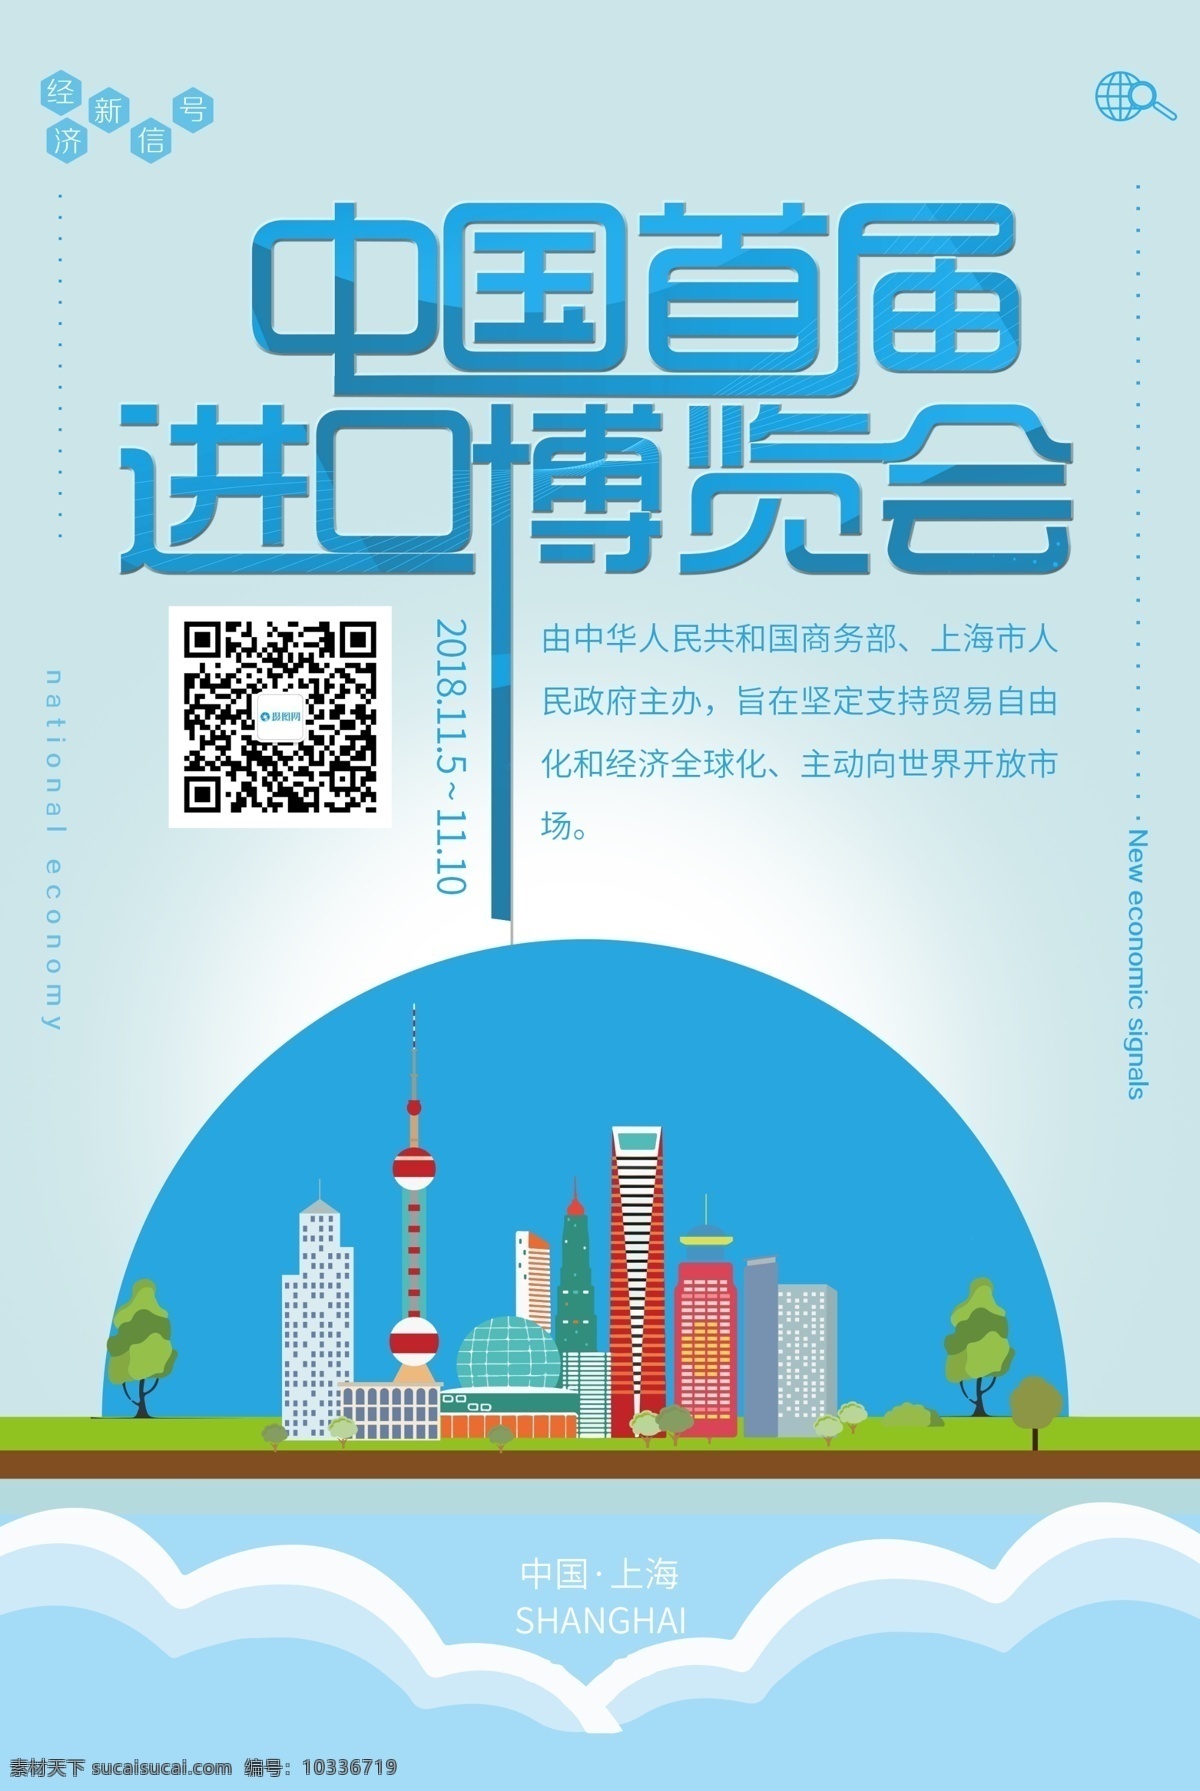 中国 首届 进口 博览会 海报 国际 上海博览会 首届博览会 进口博览会 国际博览会